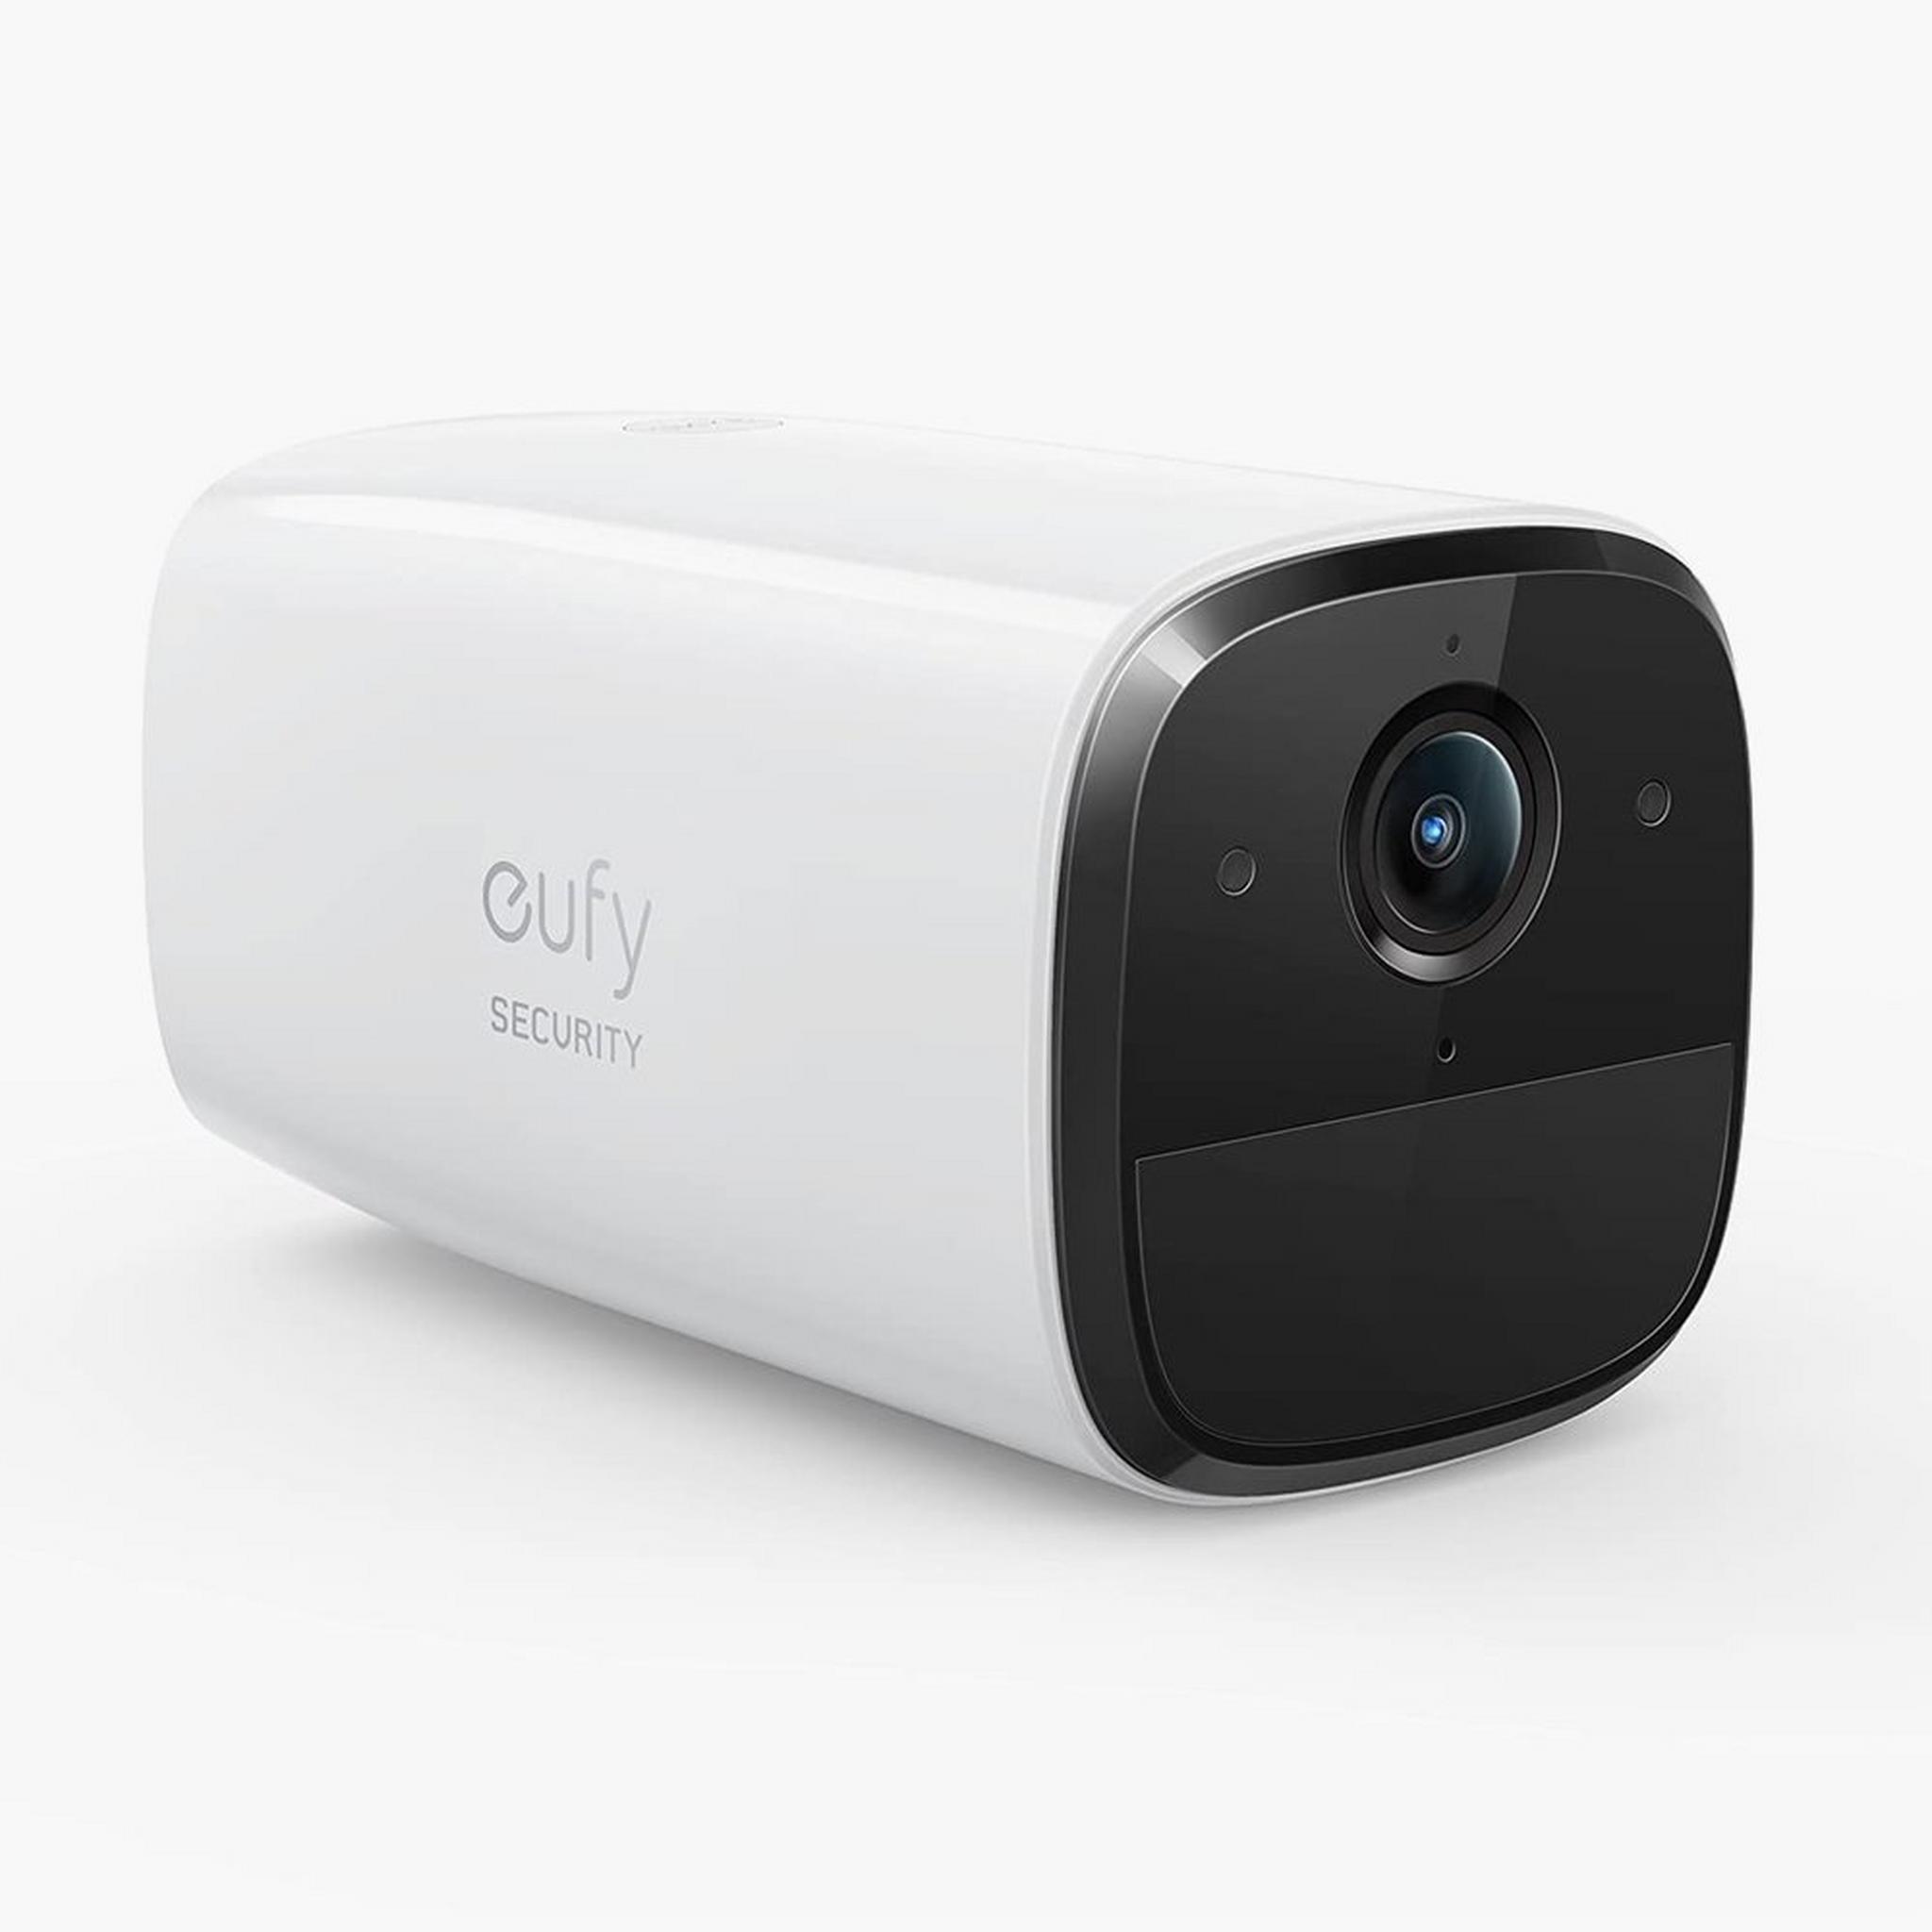 كاميرا مراقبة سولو 1080بيكسل من ايوفي - ابيض + رمادي